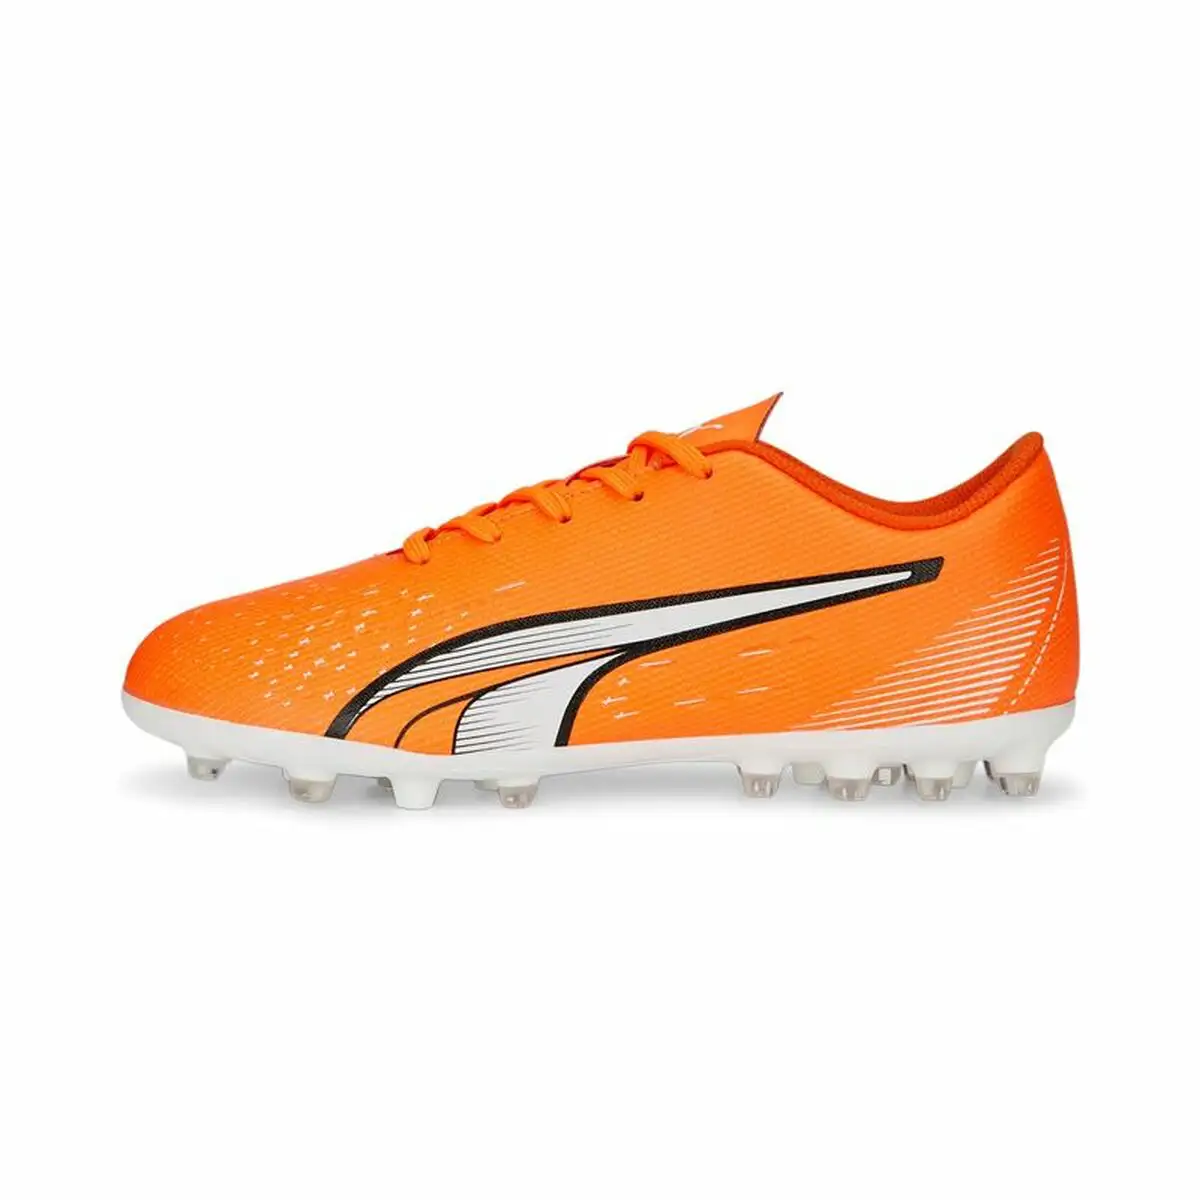 Chaussures de foot pour enfants puma ultra play mg orange homme_8694. Bienvenue chez DIAYTAR SENEGAL - Où Choisir est un Voyage. Plongez dans notre plateforme en ligne pour trouver des produits qui ajoutent de la couleur et de la texture à votre quotidien.